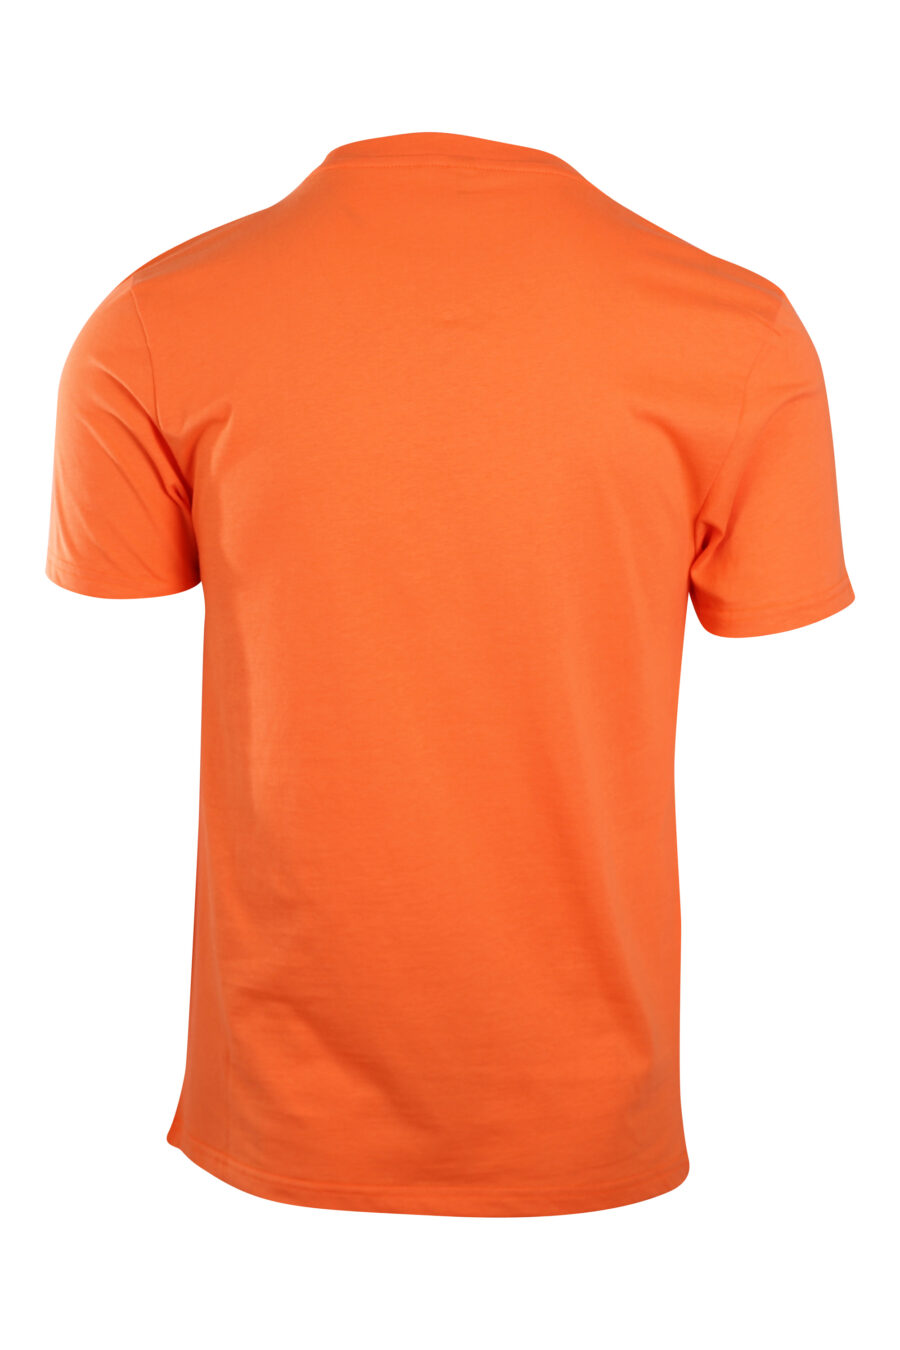 Camiseta naranja con logo en banda en hombros - IMG 2198